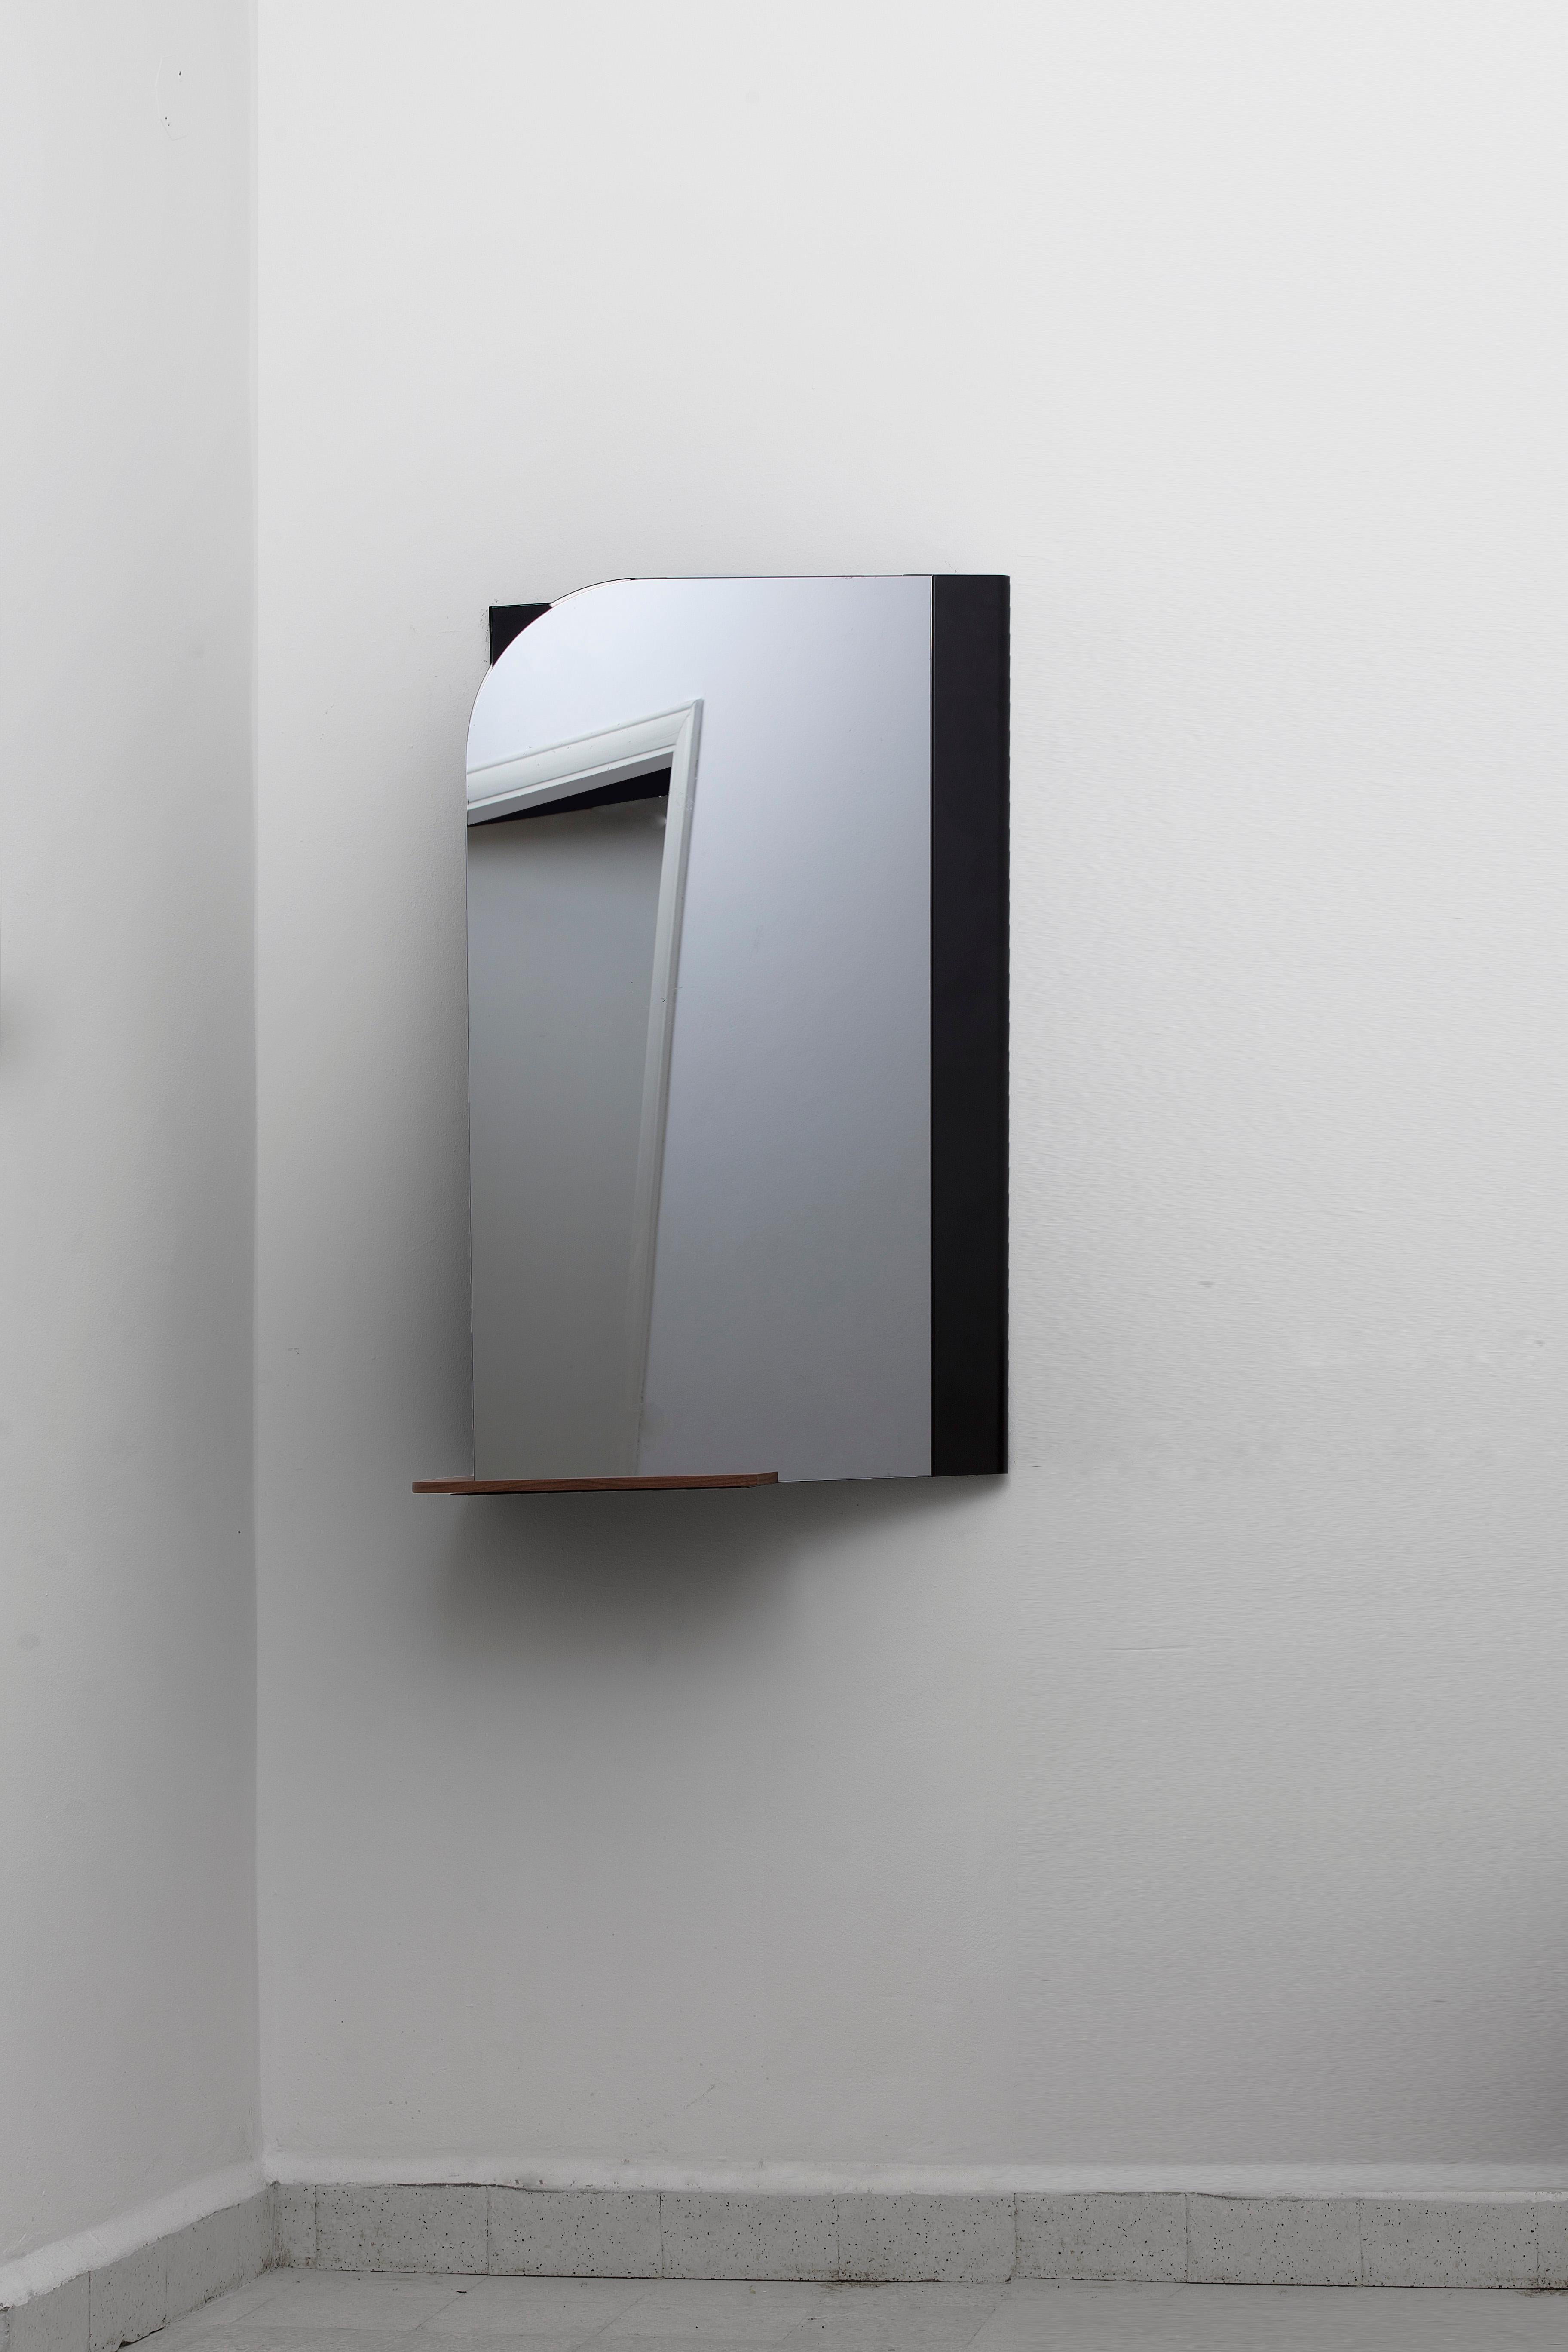 Mittlerer Drehspiegel von Borgi Bastormagi
Abmessungen: 25 x 60 x 100 cm
MATERIAL: Stahl, Spiegel, Walnussholz

Pivot -M- ist eine Variante des Spiegels in voller Höhe, die die konventionelle Konsole neu interpretiert.

Der an der Wand